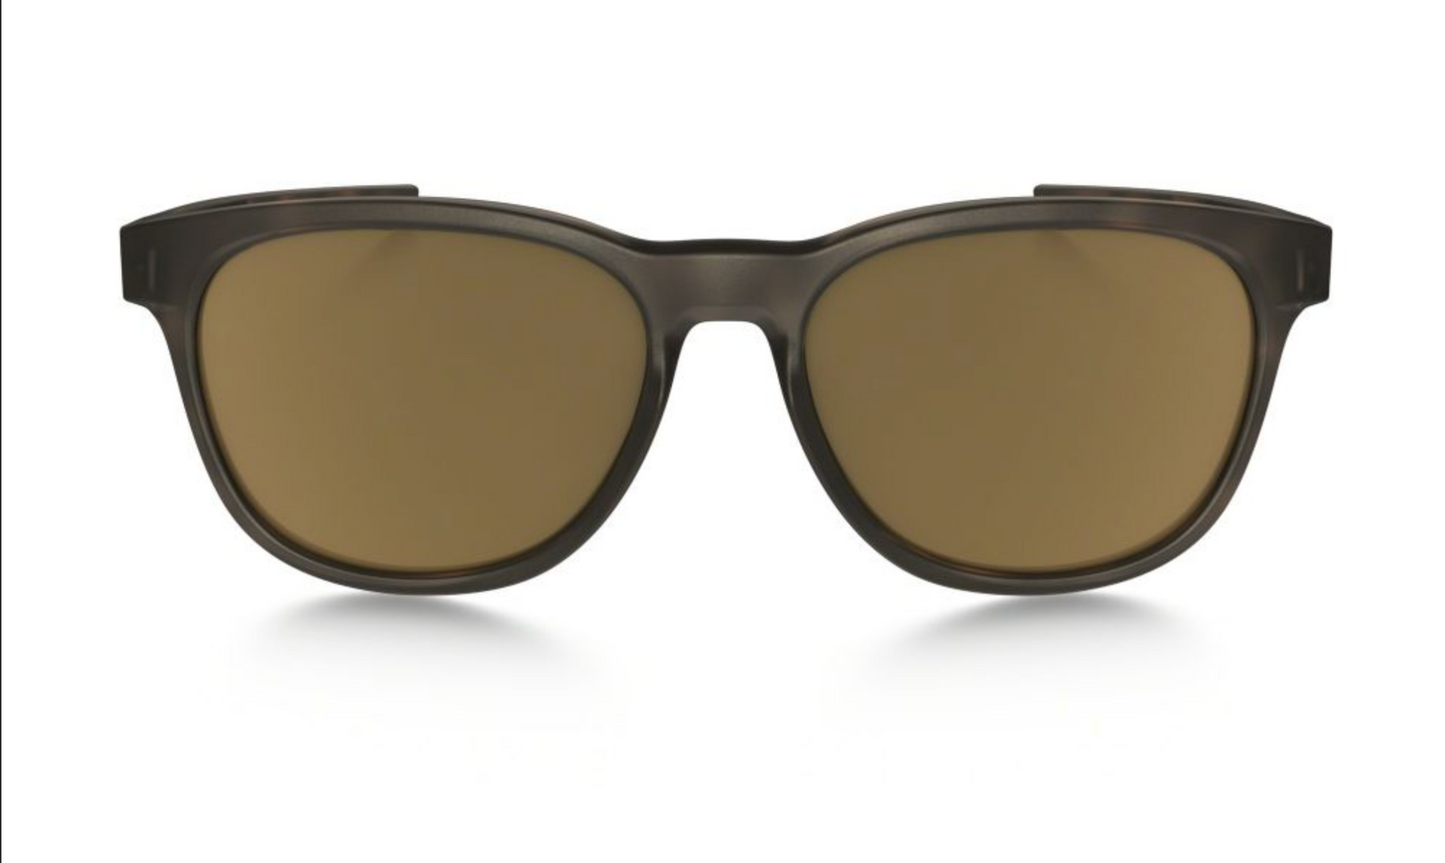 Oakley "Stringer" Sonnenbrille braun/bronze